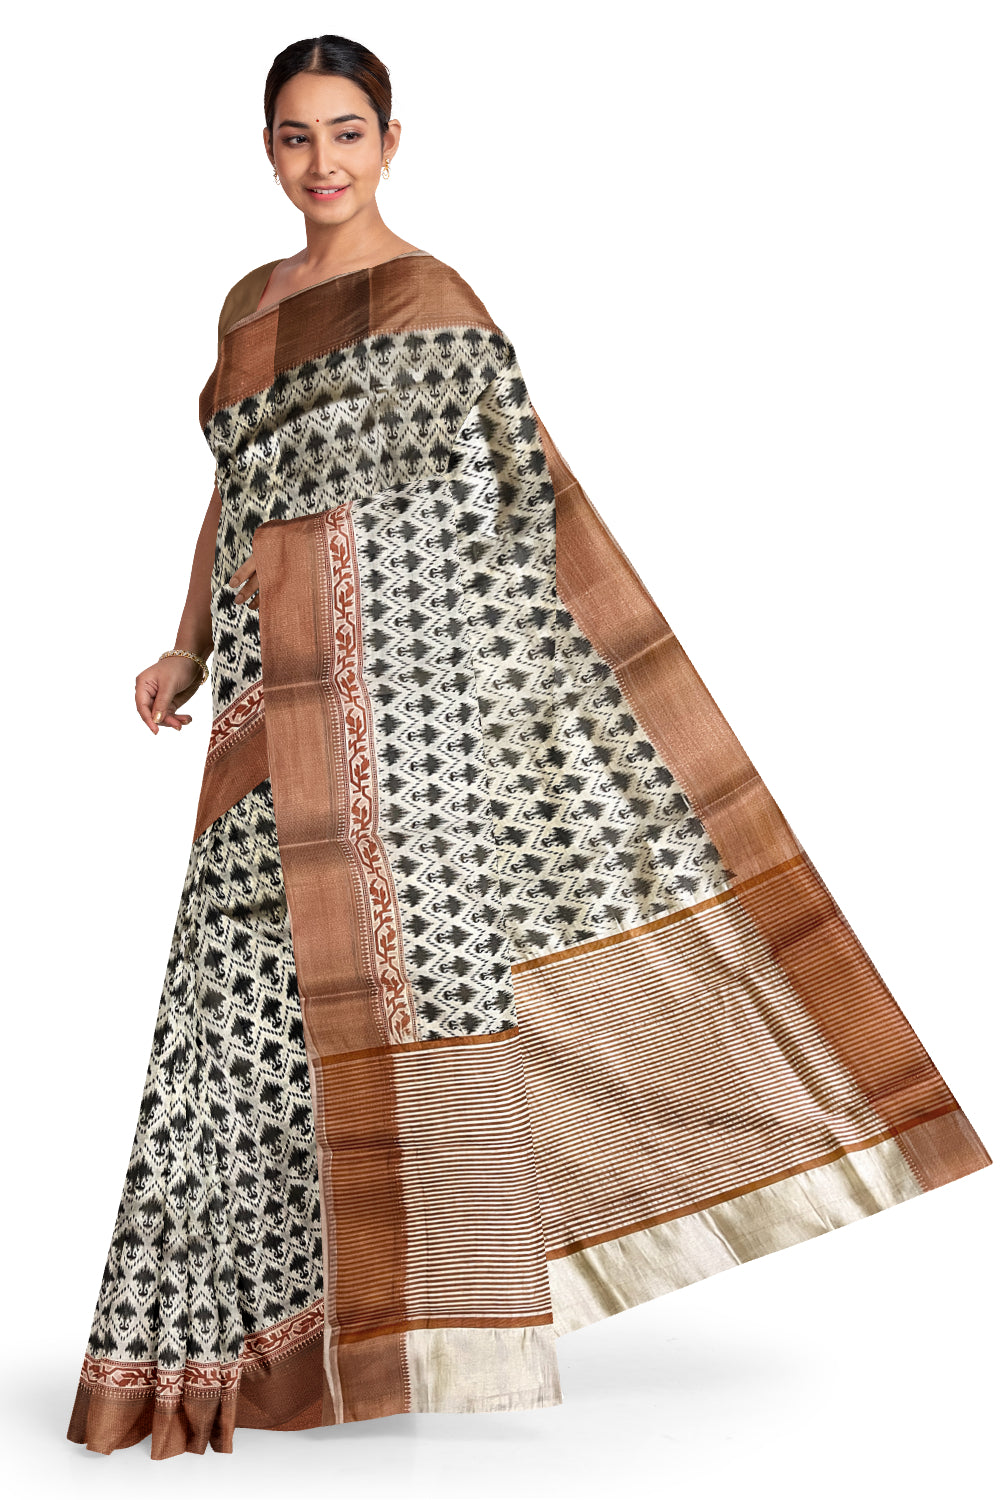 Southloom Semi Silk White Designer Printed Saree with Copper Border